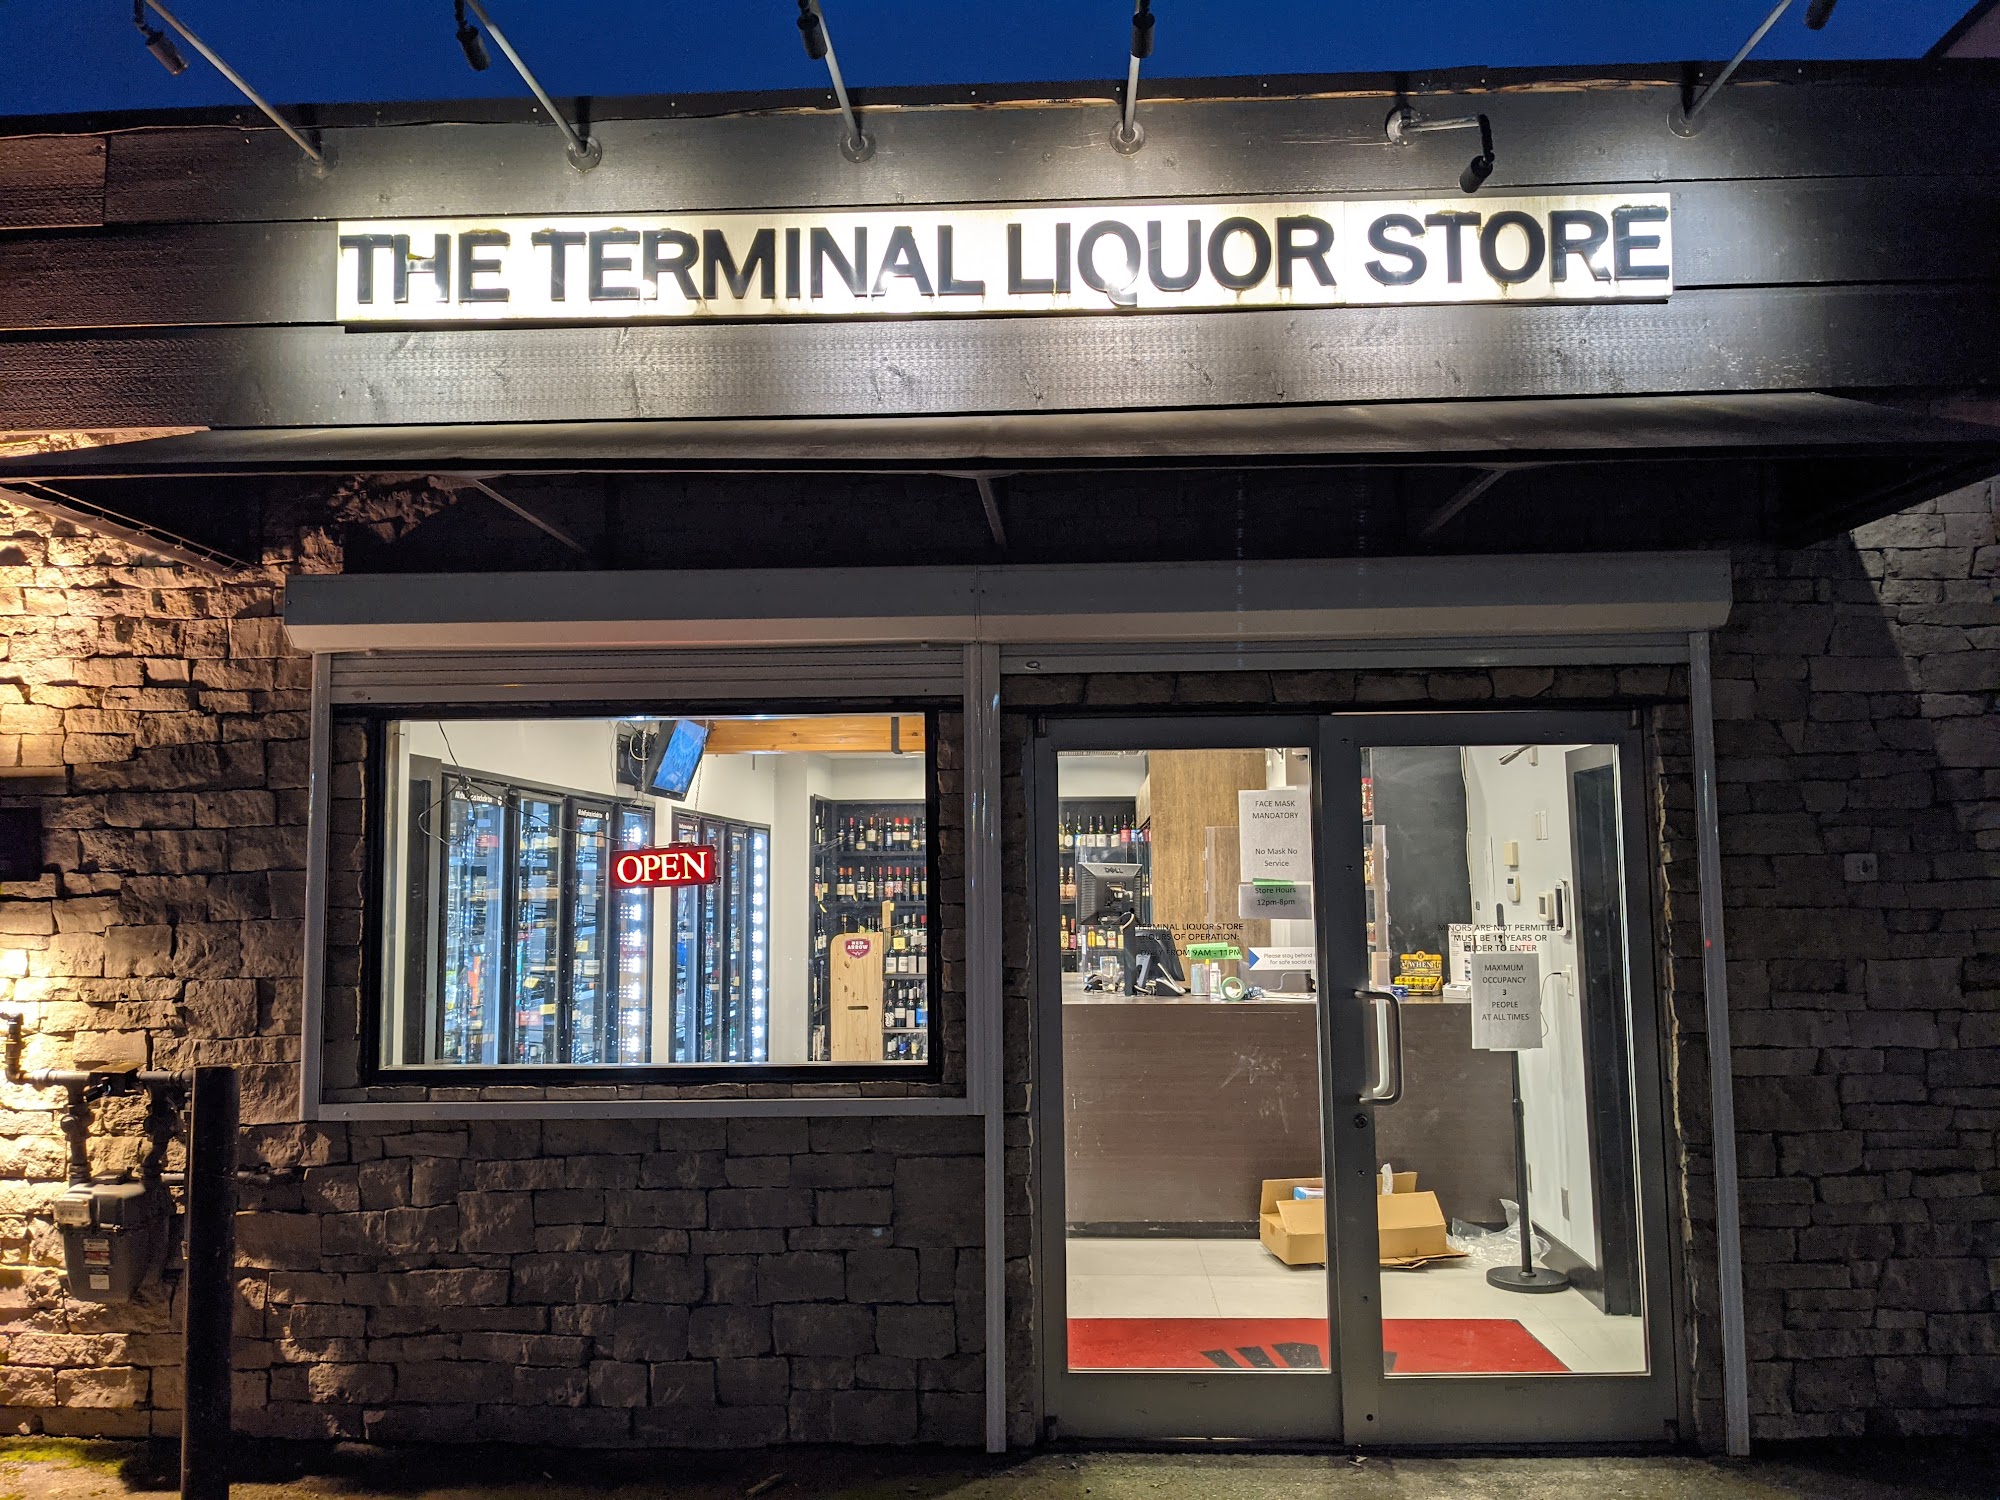 The Terminal Liquor Store